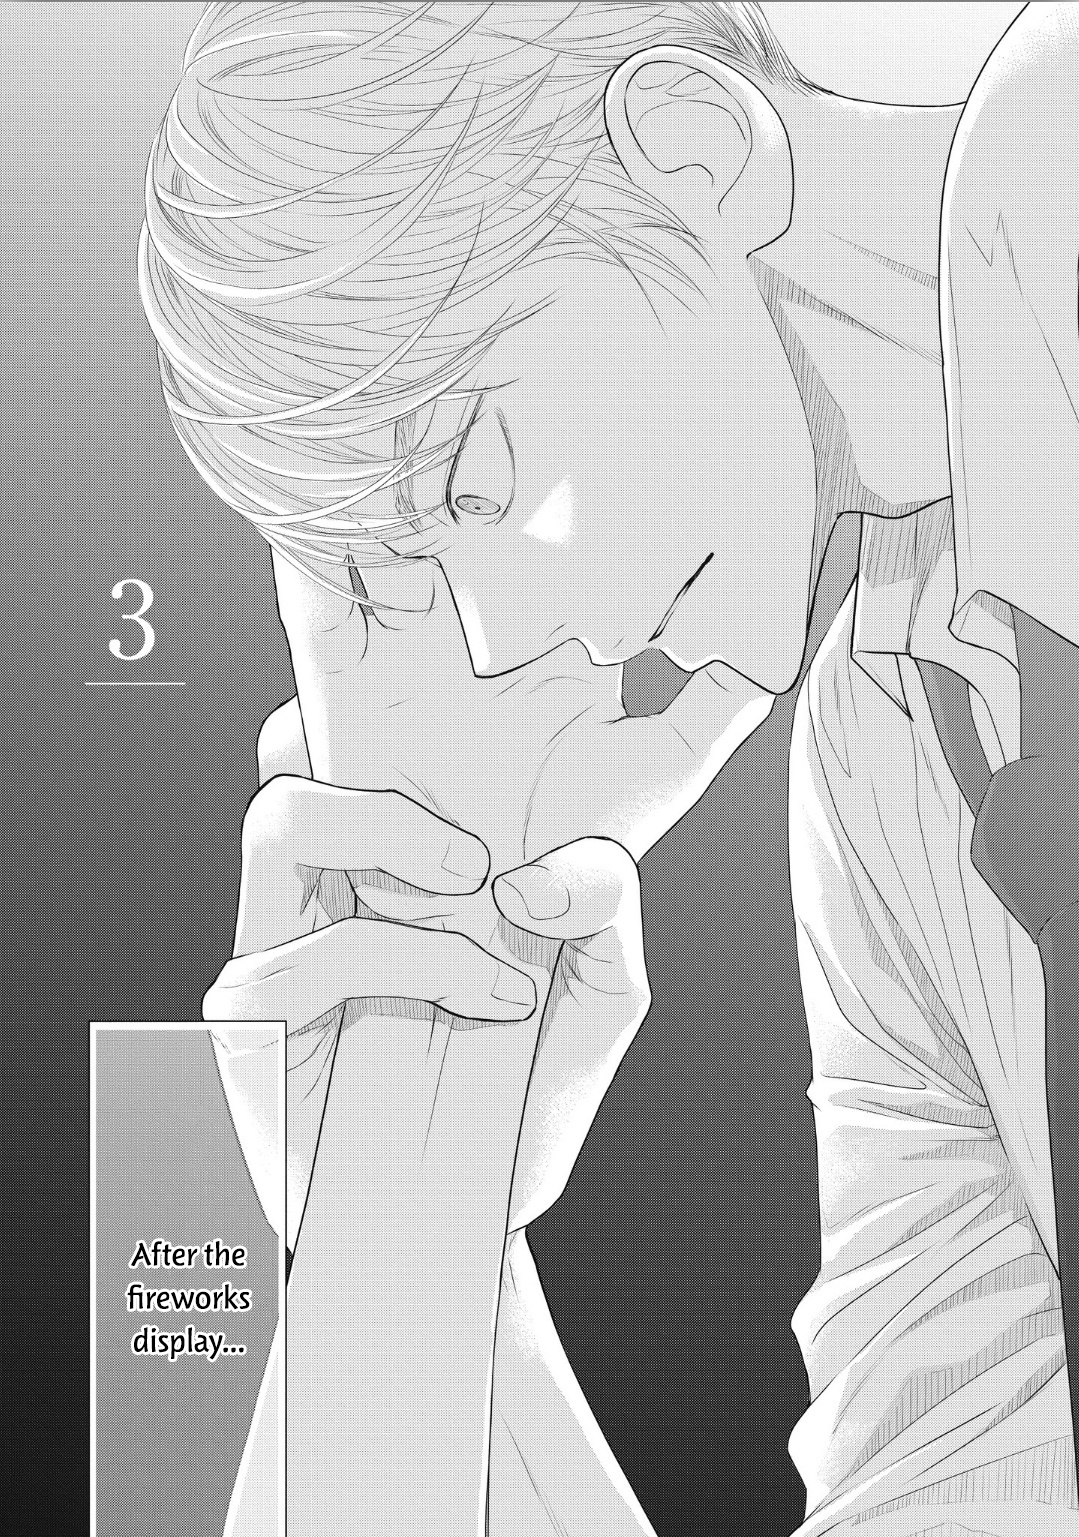 4-Gatsu No Tokyo Wa... Vol.1 Chapter 3 - Picture 3